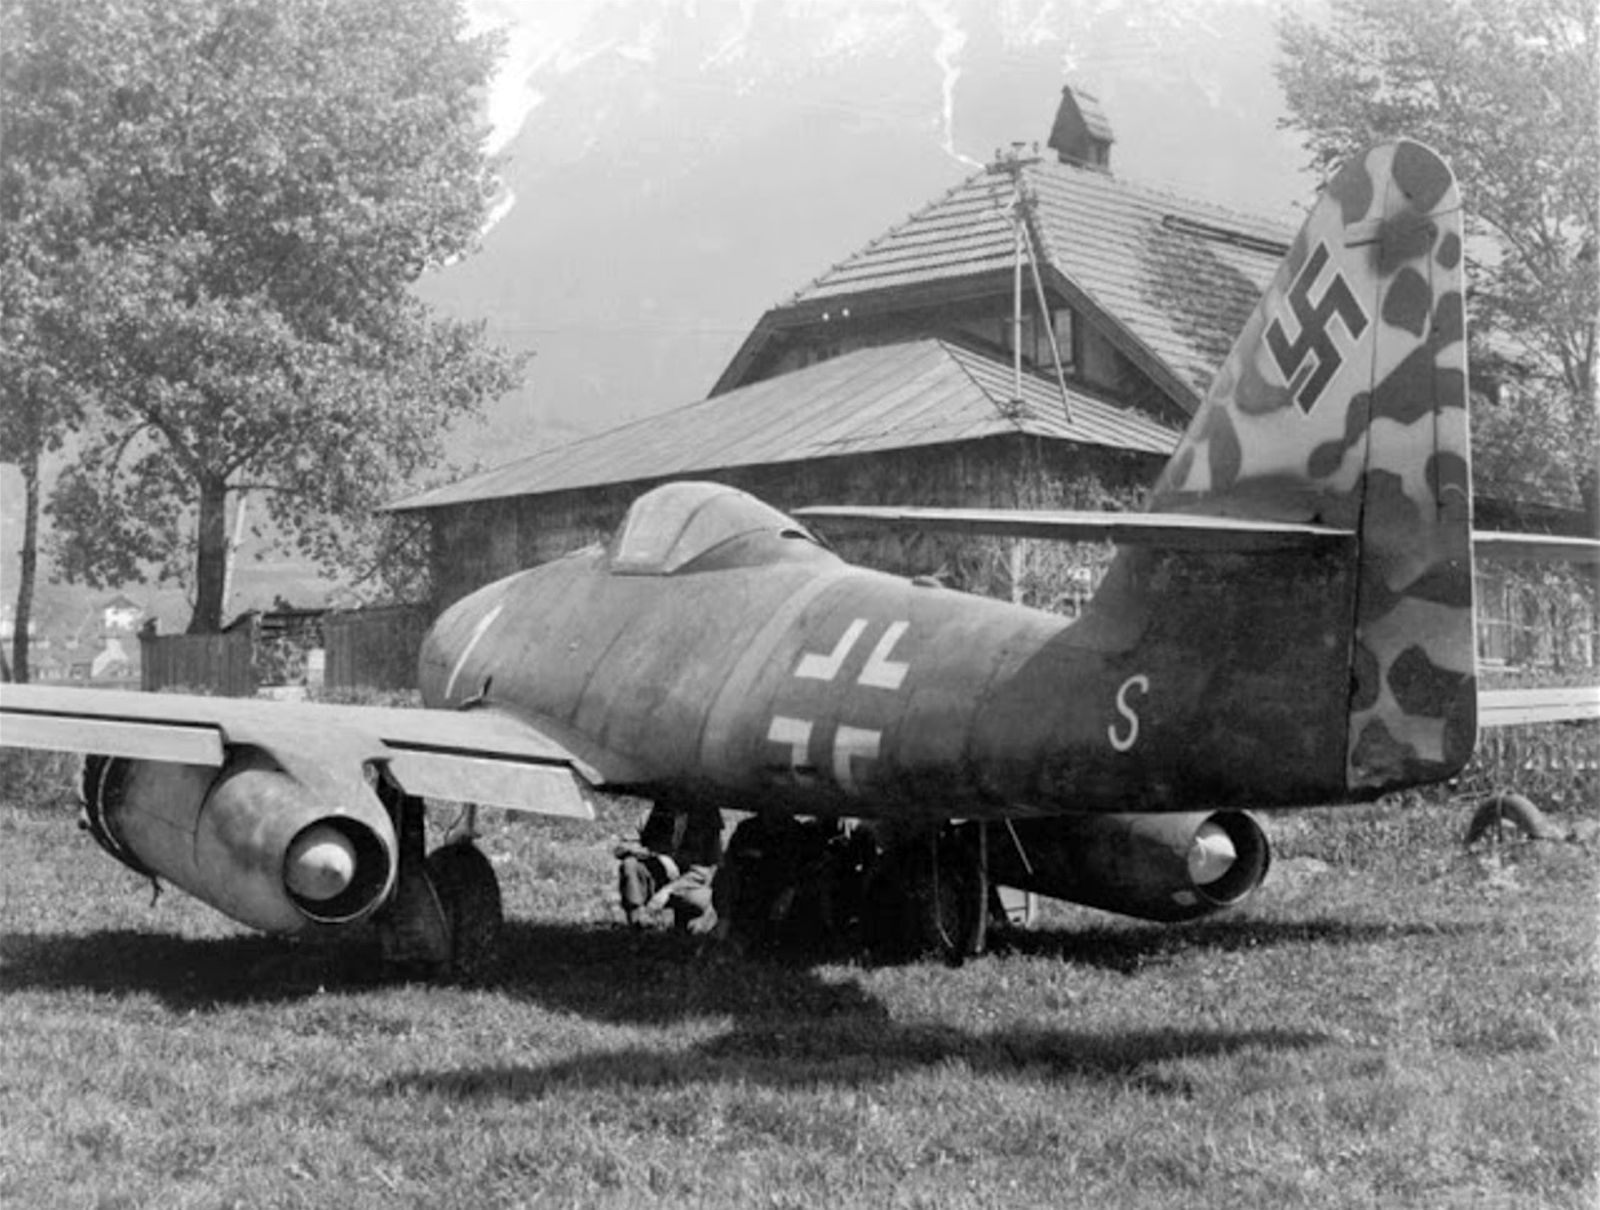 Messerchmitt Me-262  "White 1", 1945